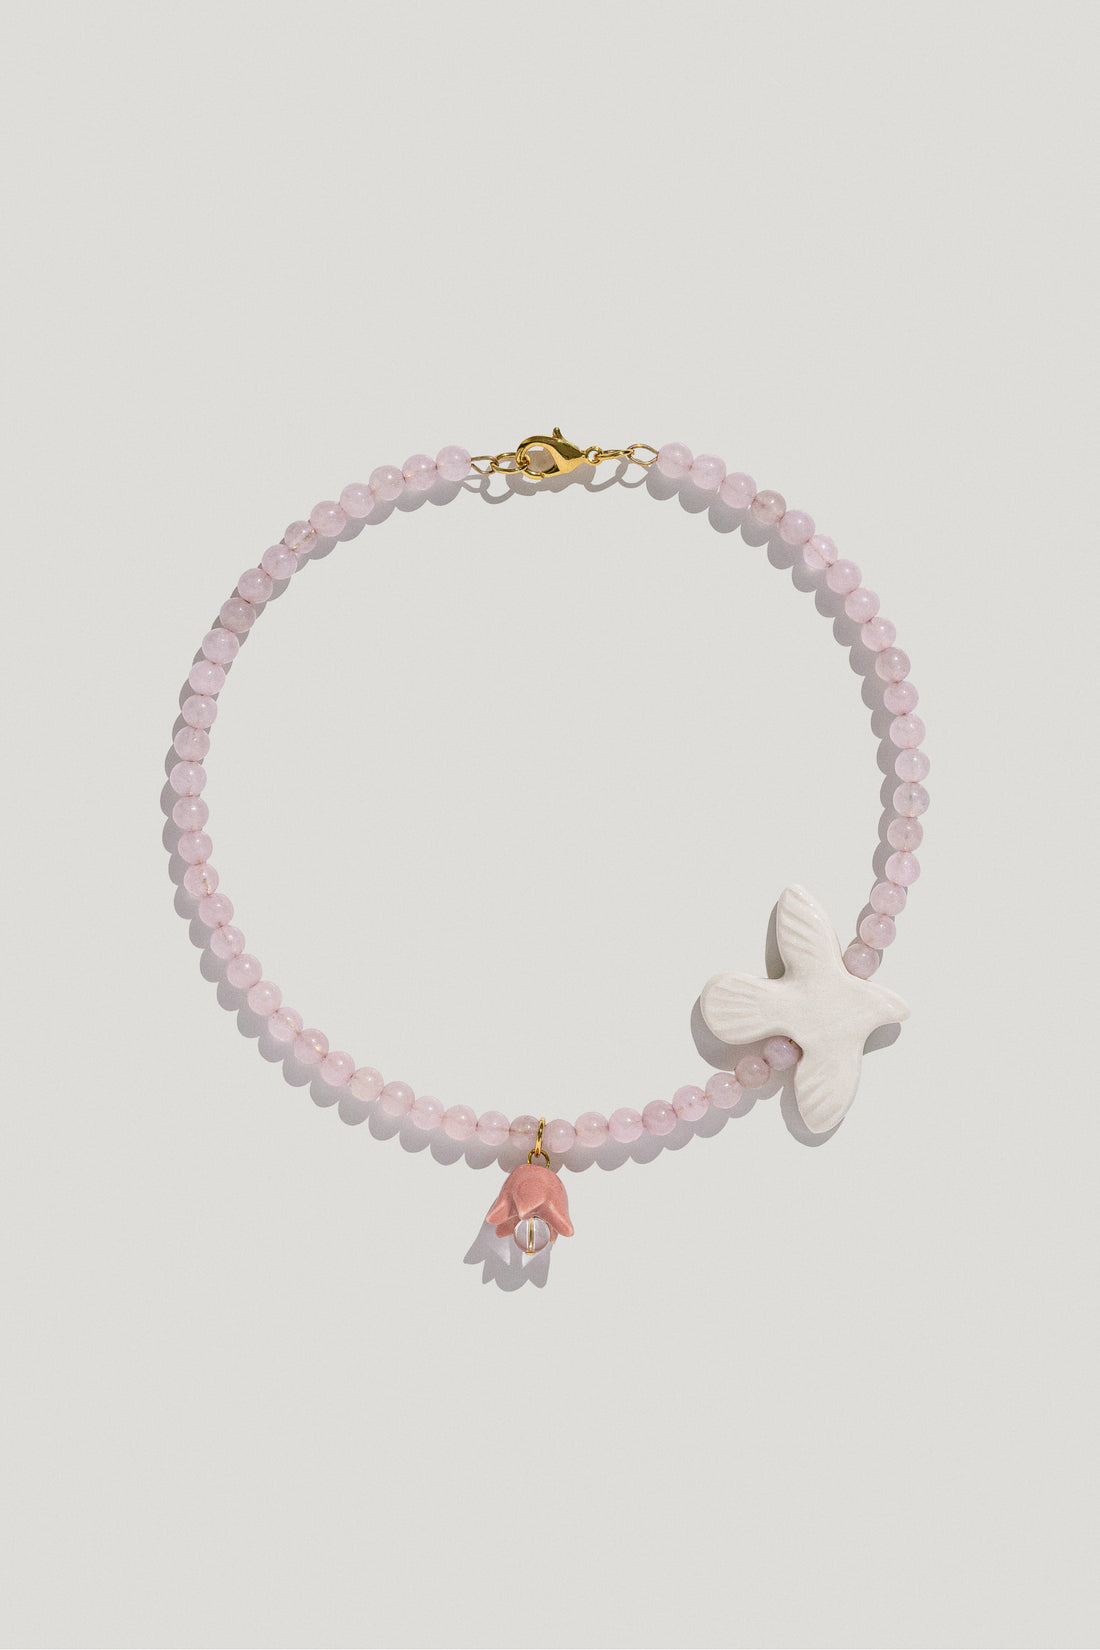 Polysk necklace with bubble-gum quartz, porcelain bird and flower